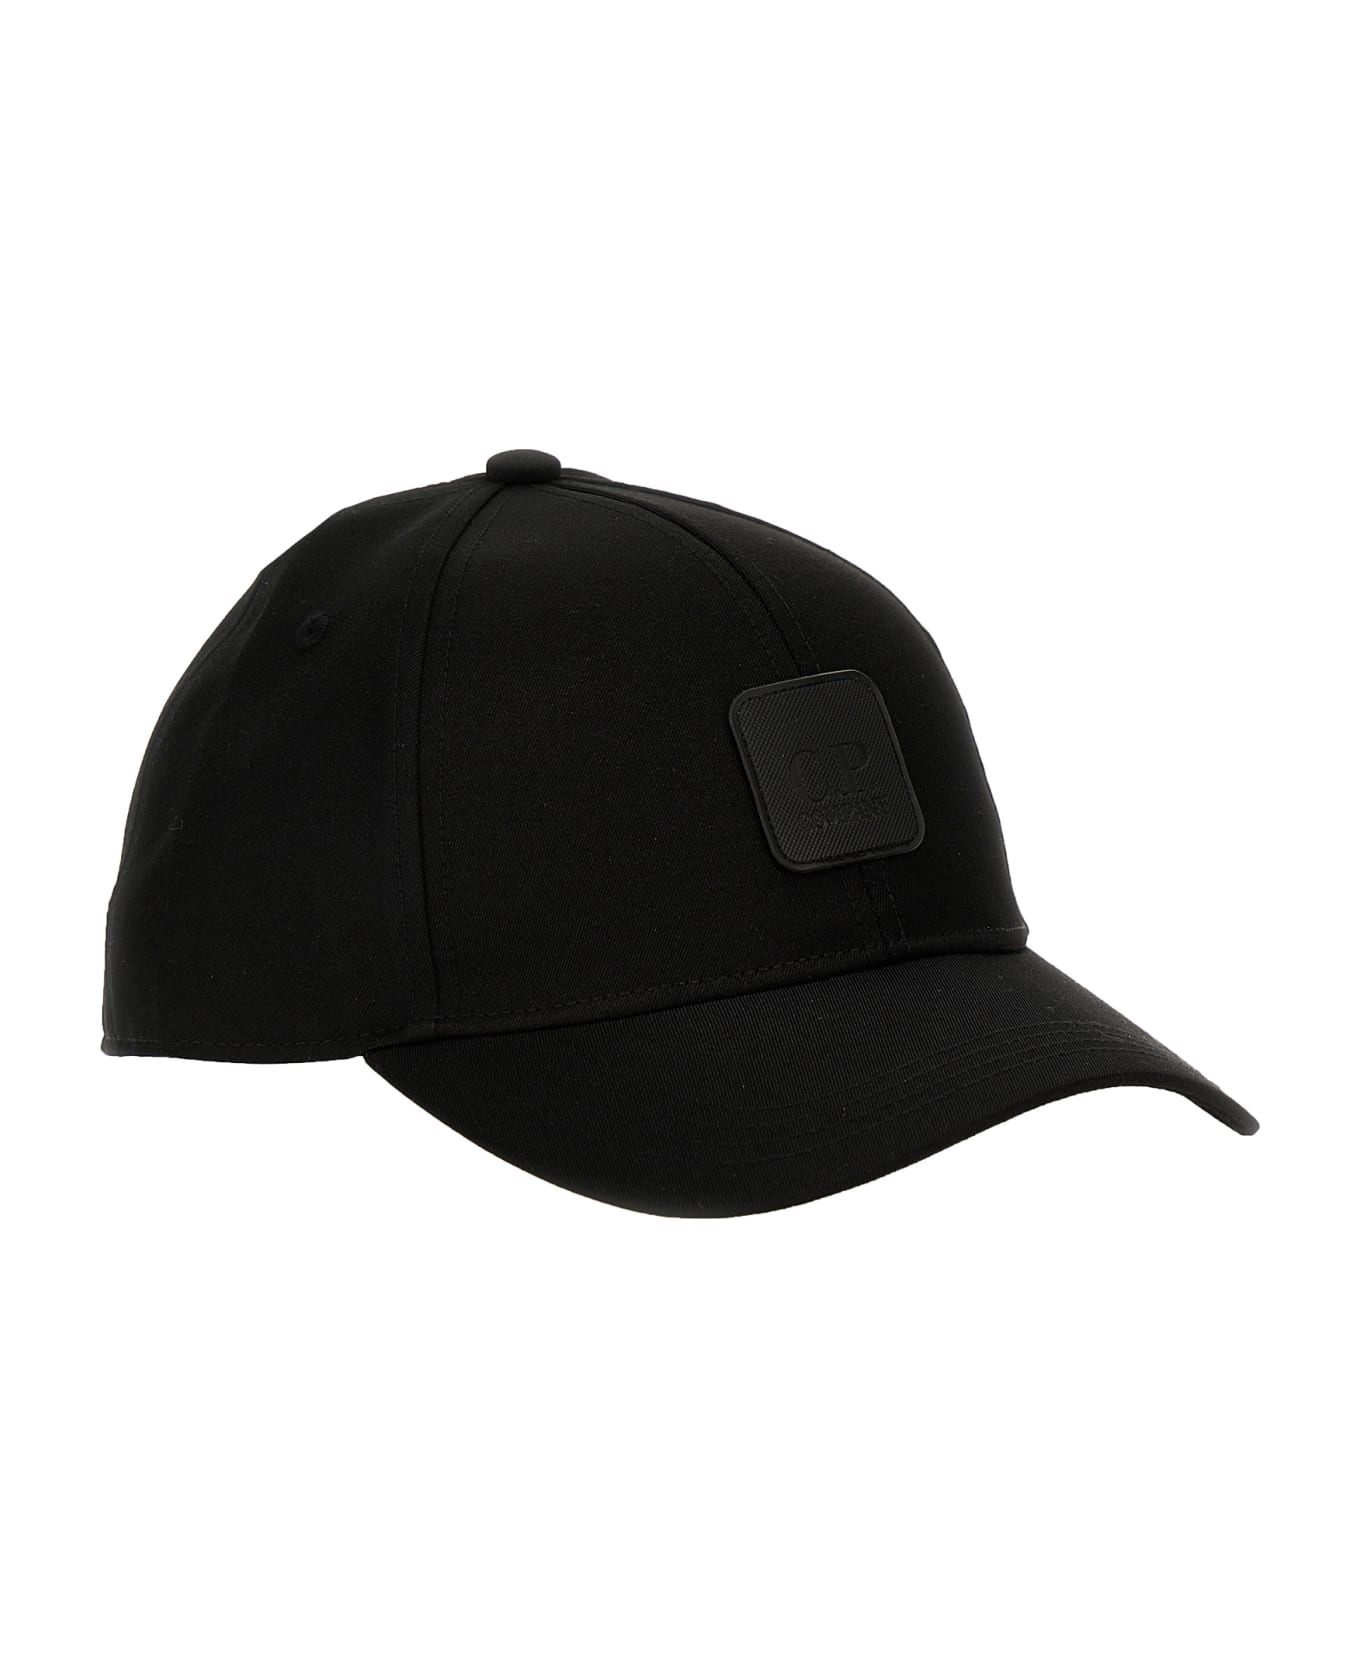 C.P. Company 'metropolis' Cap - Black   帽子